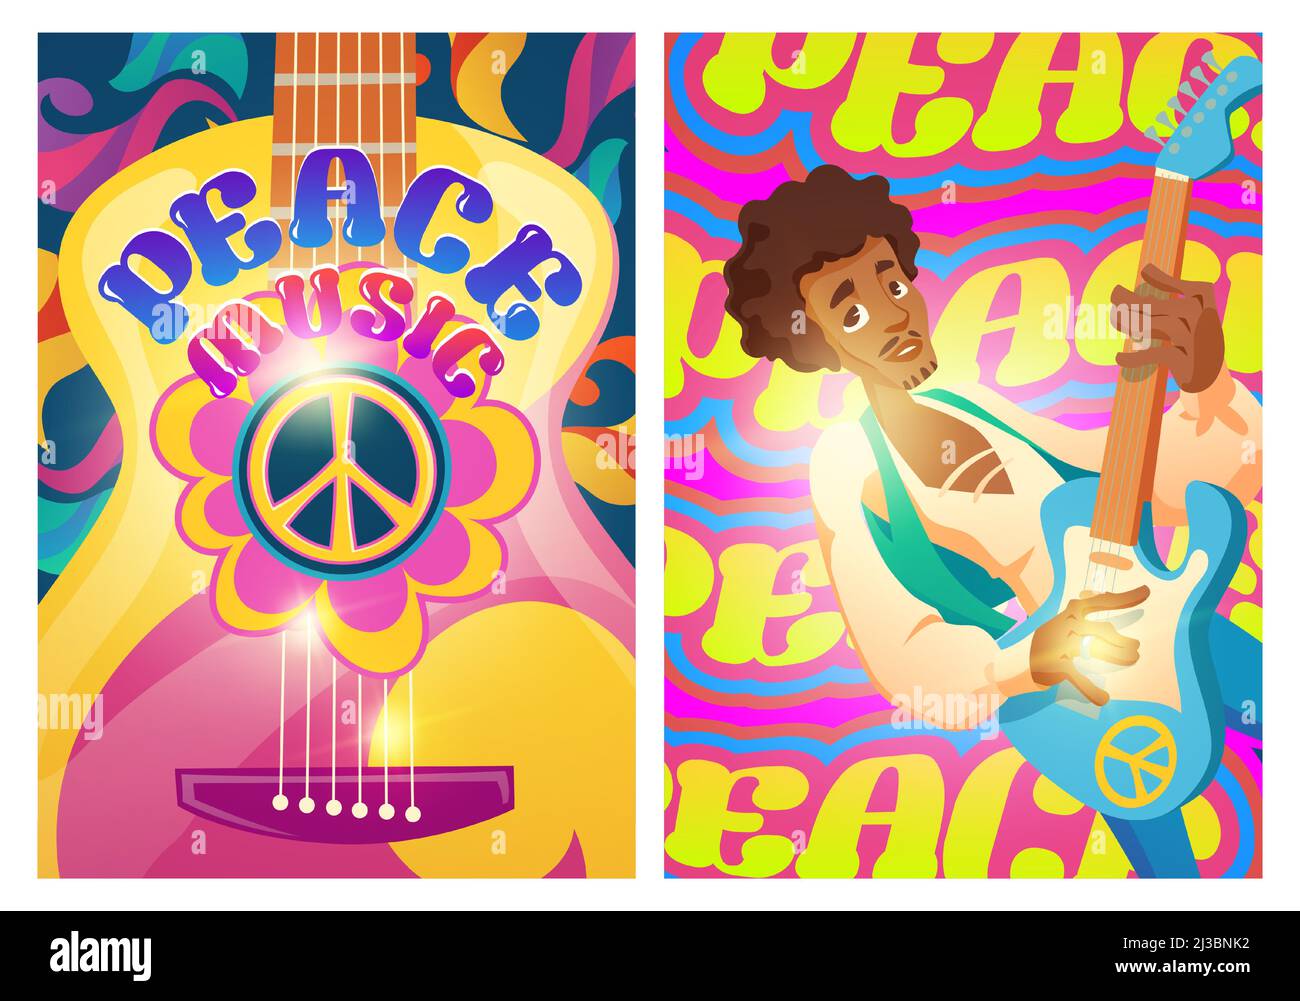 Manifesti di musica di pace con il segno hippie e l'uomo con la chitarra. Woodstock festival stile. Volantini vettoriali con motivi psichedelici cartoni animati. Musica retrò del 60 Illustrazione Vettoriale